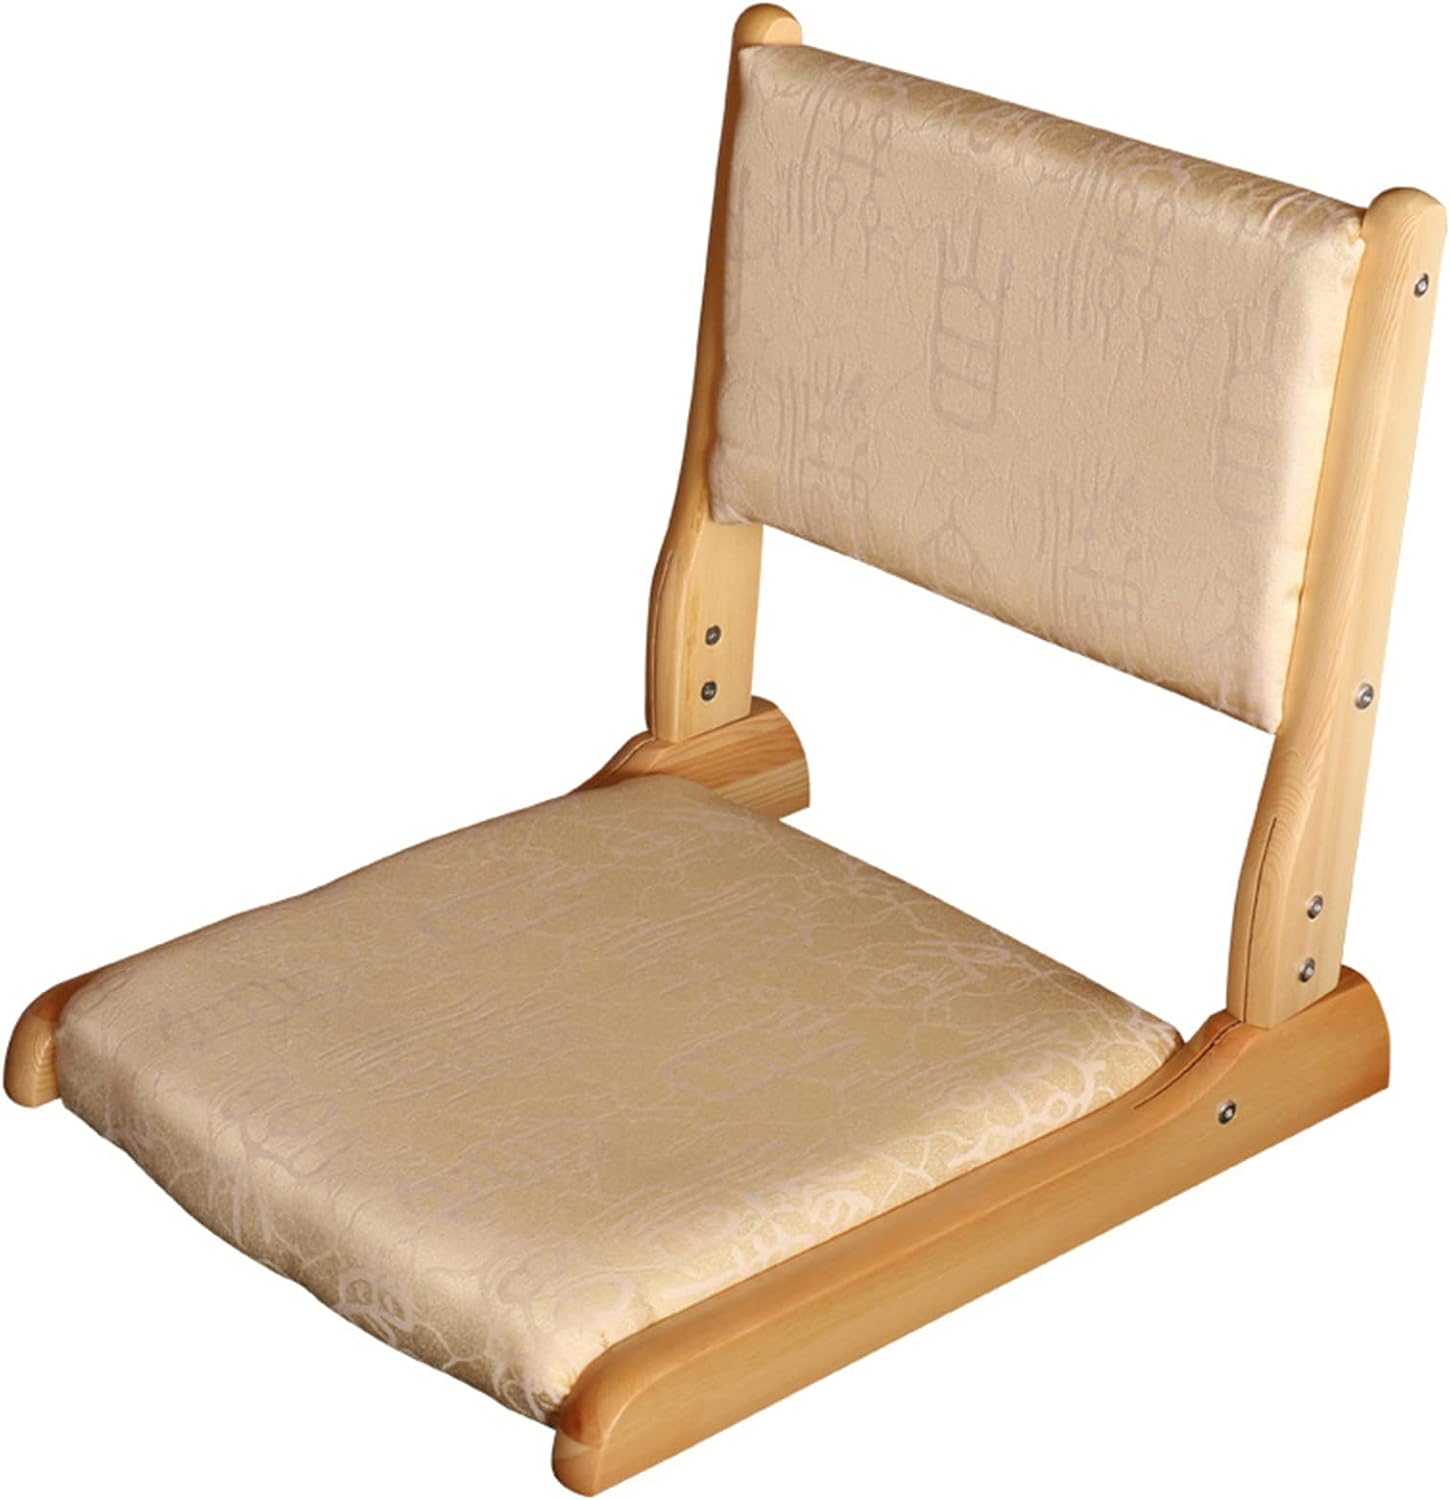 座椅子 クッション付き 和座椅子 木製 フロアーチェア 折り畳み 和座椅子 座敷 背もたれ ローチェ...